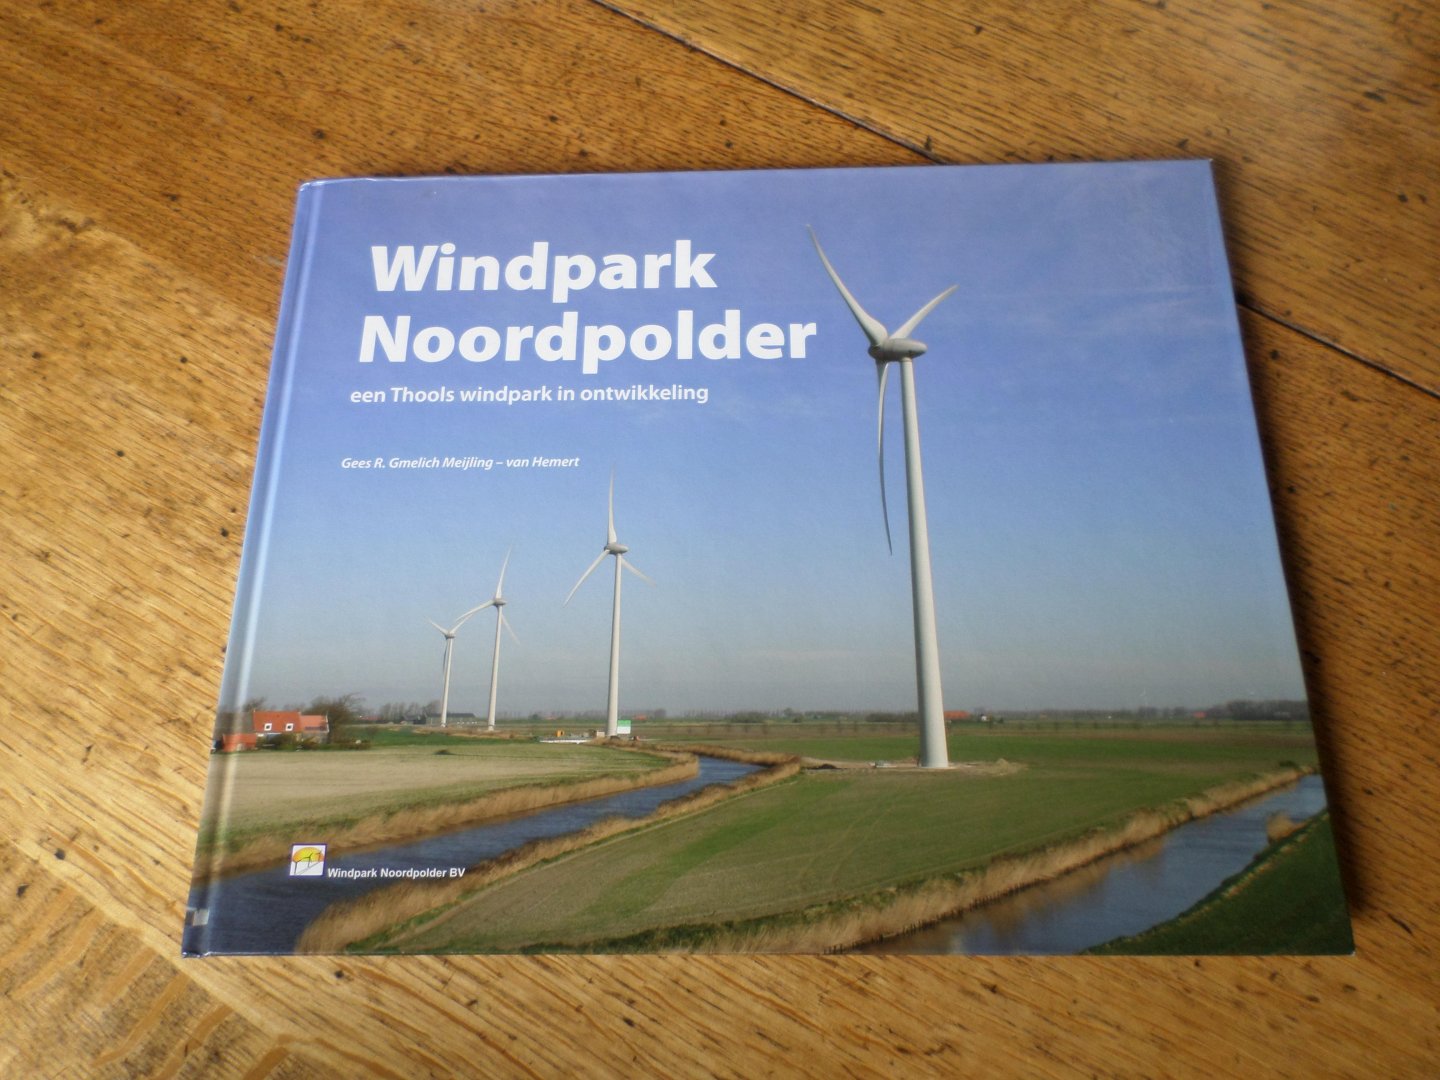 Gmelich Meijling - van Hemert, Gees R. - Windpark Noordpolder